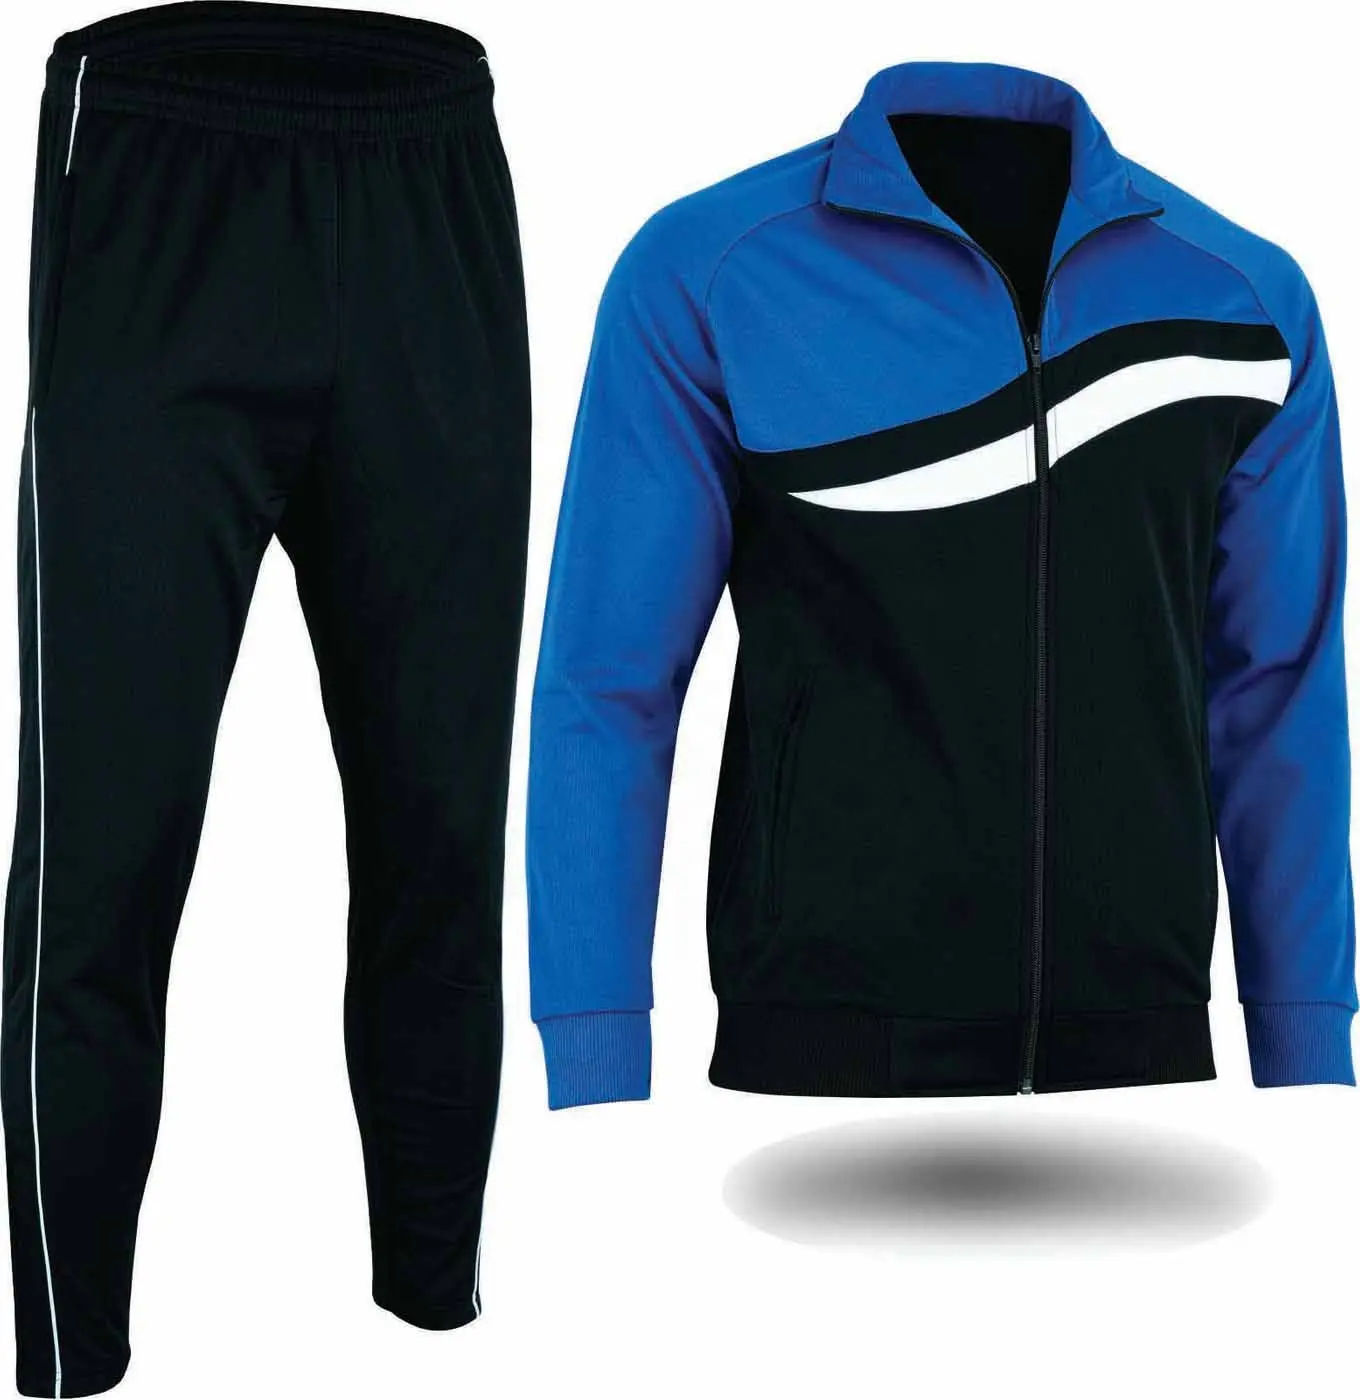 Optima pria disesuaikan desain warna ringan pakaian olahraga Jogging kinerja Zip Up pelatihan sepak bola Suit